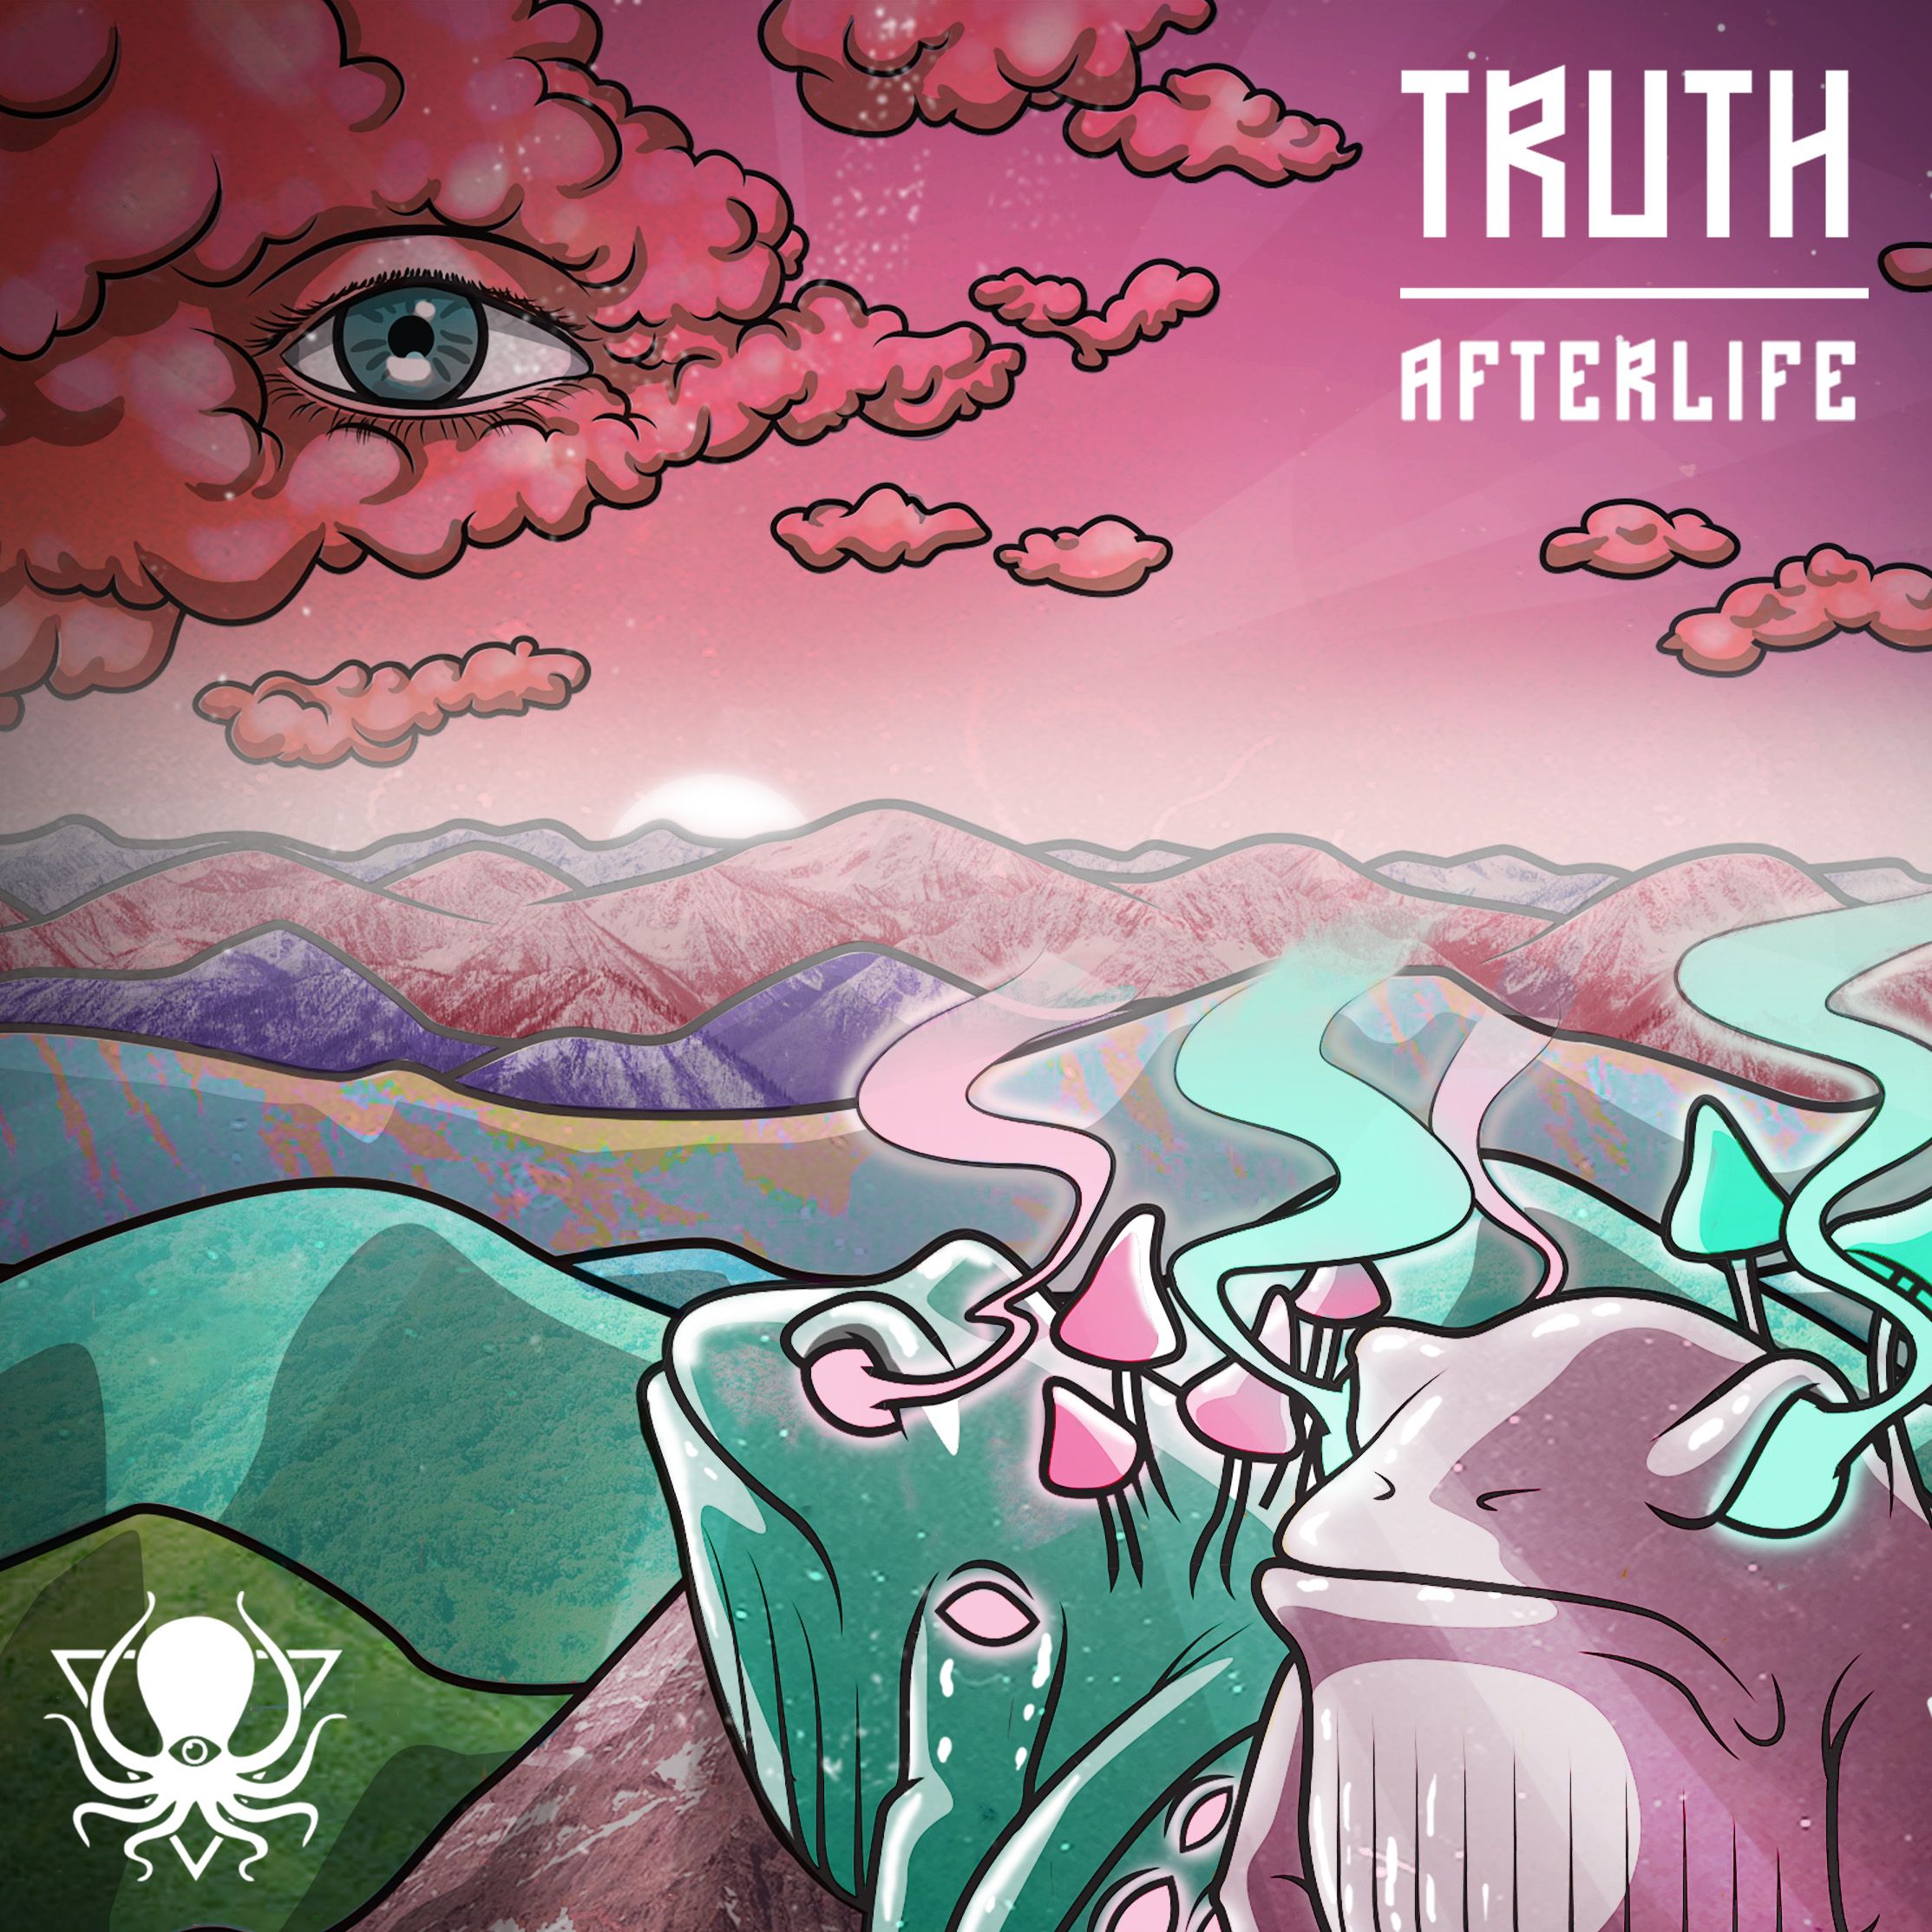 Tikiake Truth - Afterlife (DDD095)